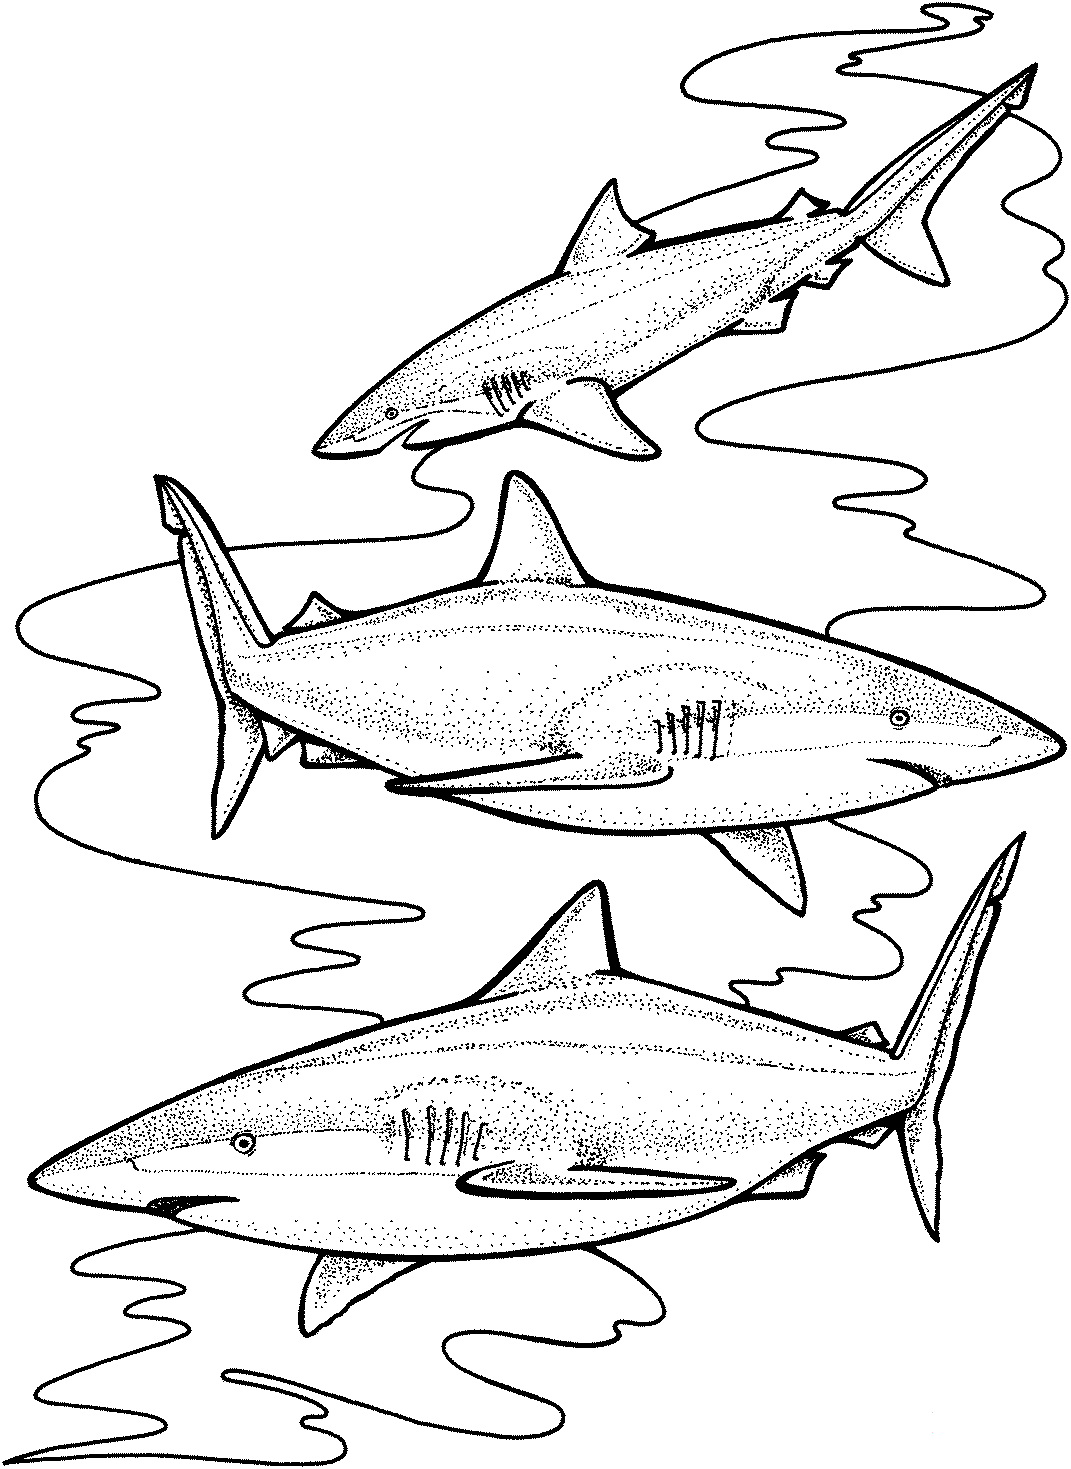 Drei Tigerhaie sind wahrscheinlich auf bestimmte hochverfügbare Beute von Haien spezialisiert